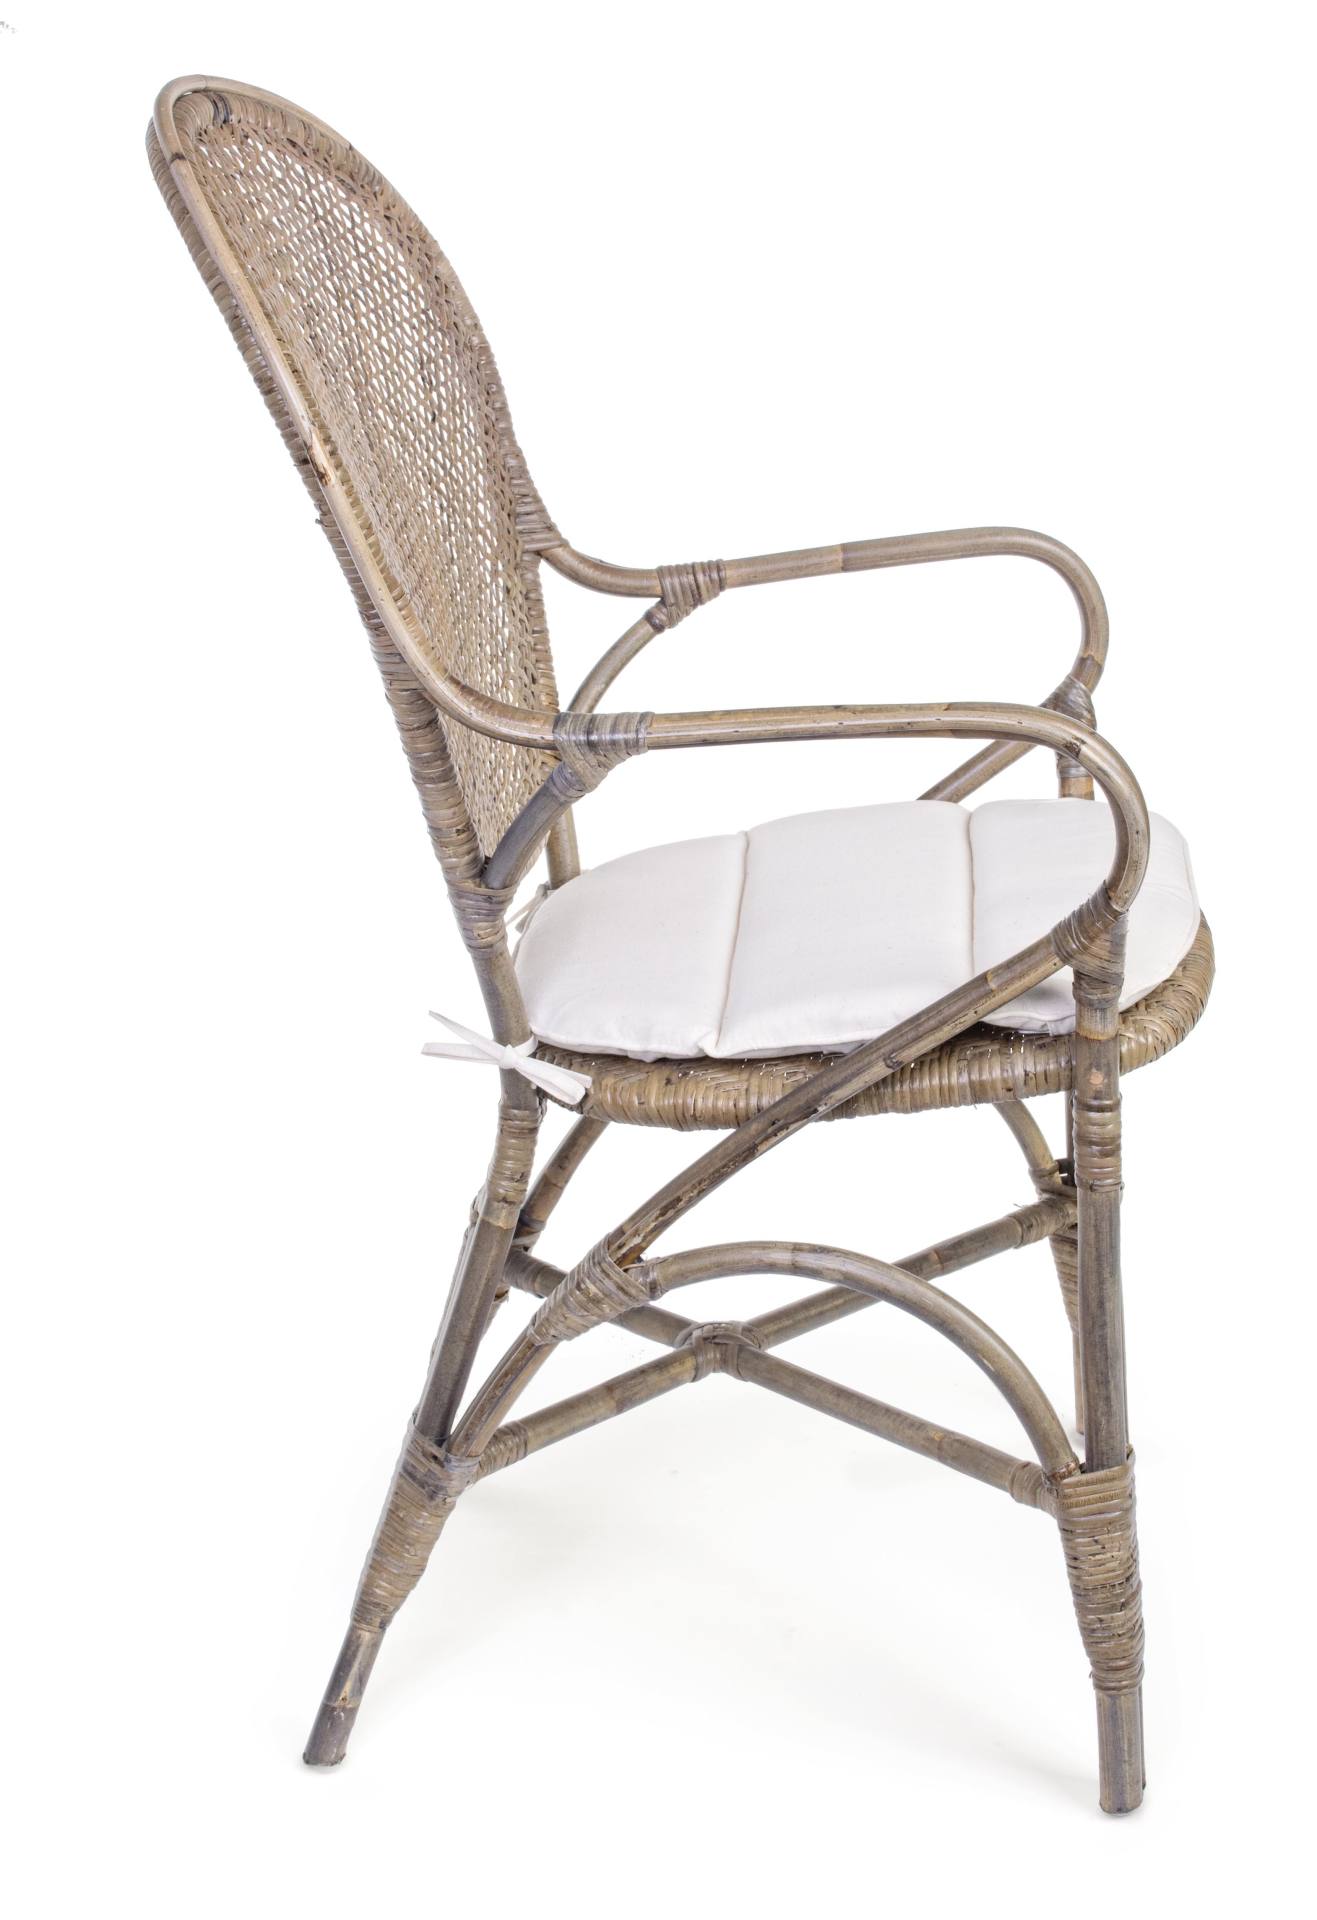 Der Stuhl Edelina überzeugt mit seinem klassischem Design. Gefertigt wurde der Stuhl aus Rattan, welches einen natürlichen Farbton besitzt. Der Stuhl beinhaltet ein Sitzkissen aus Baumwolle. Die Sitzhöhe beträgt 47 cm.